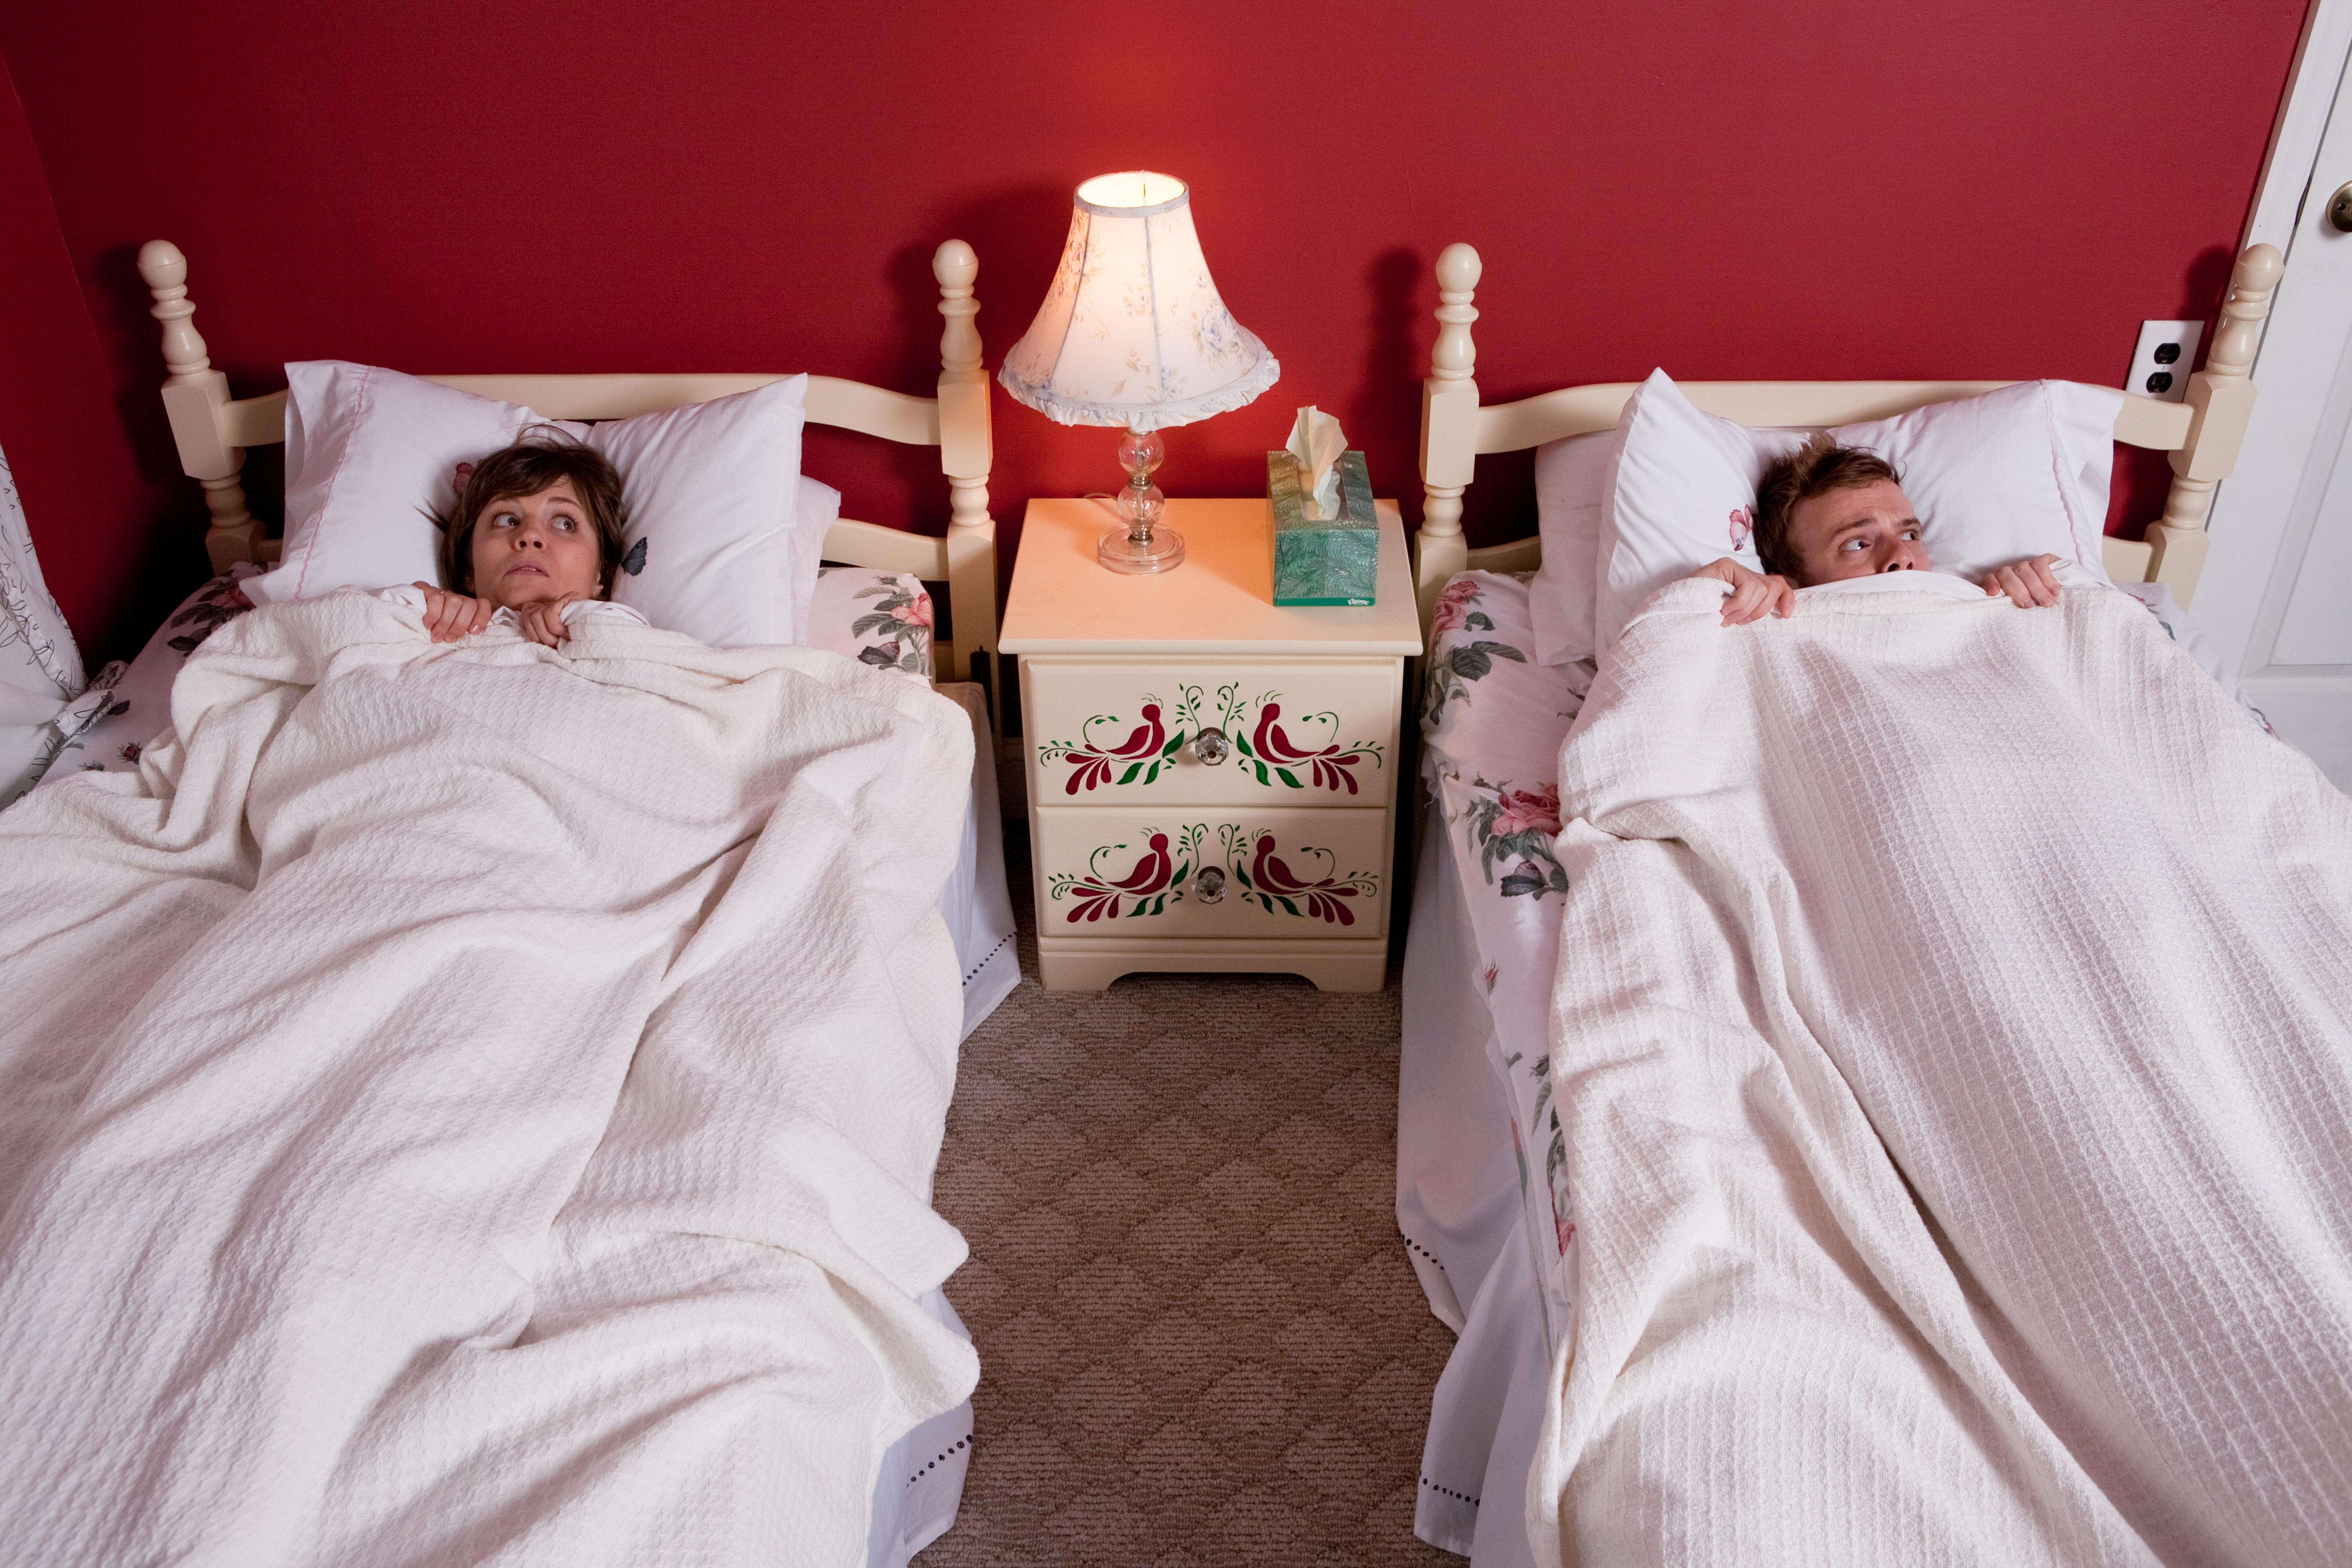 Мужем они спят на. Супружеская постель. Супружеская кровать. Сон в разных кроватях.